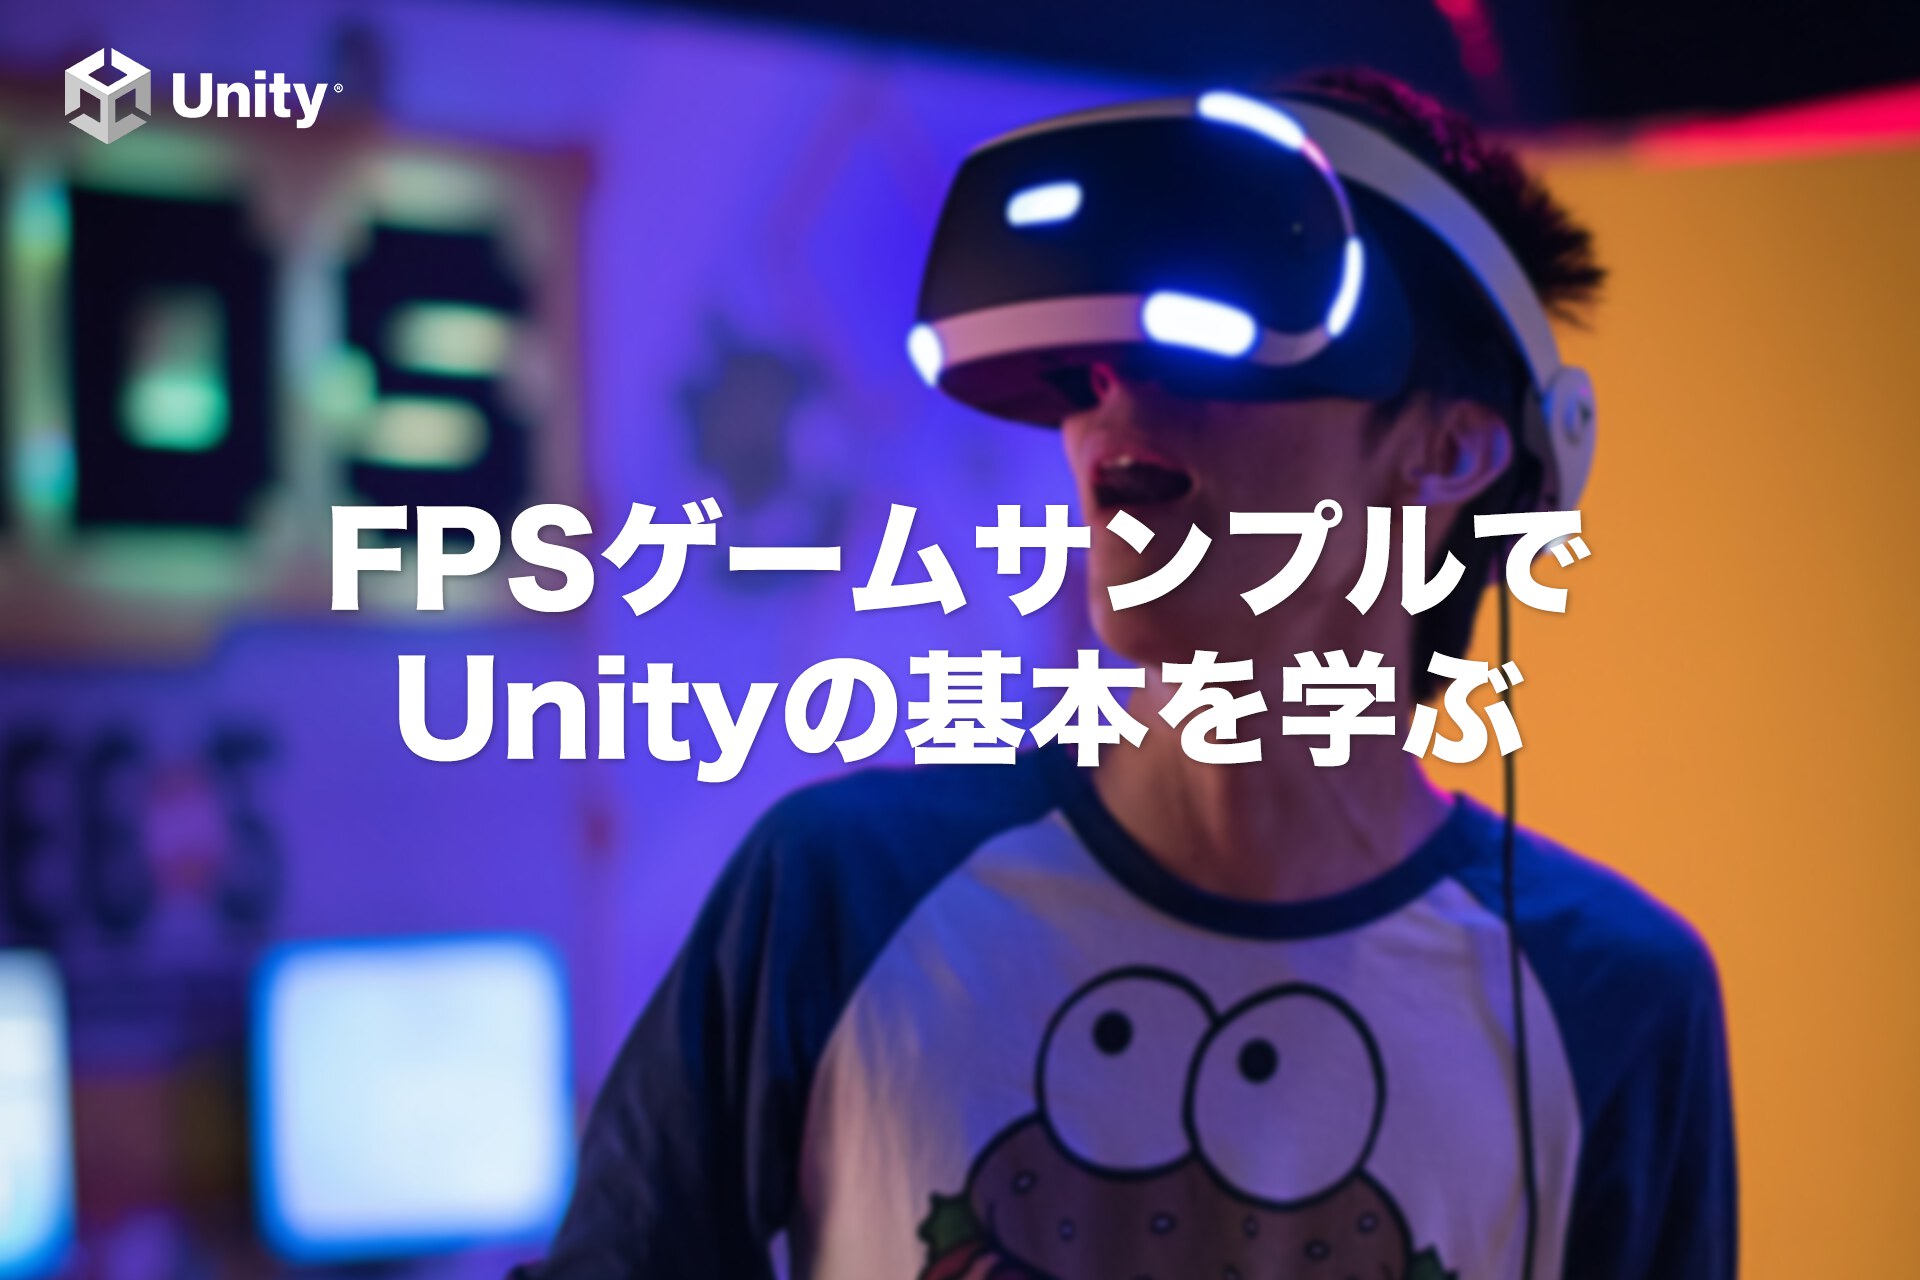 Fpsゲームサンプルを通してunityの基本を学ぶ 渋谷ほととぎす通信